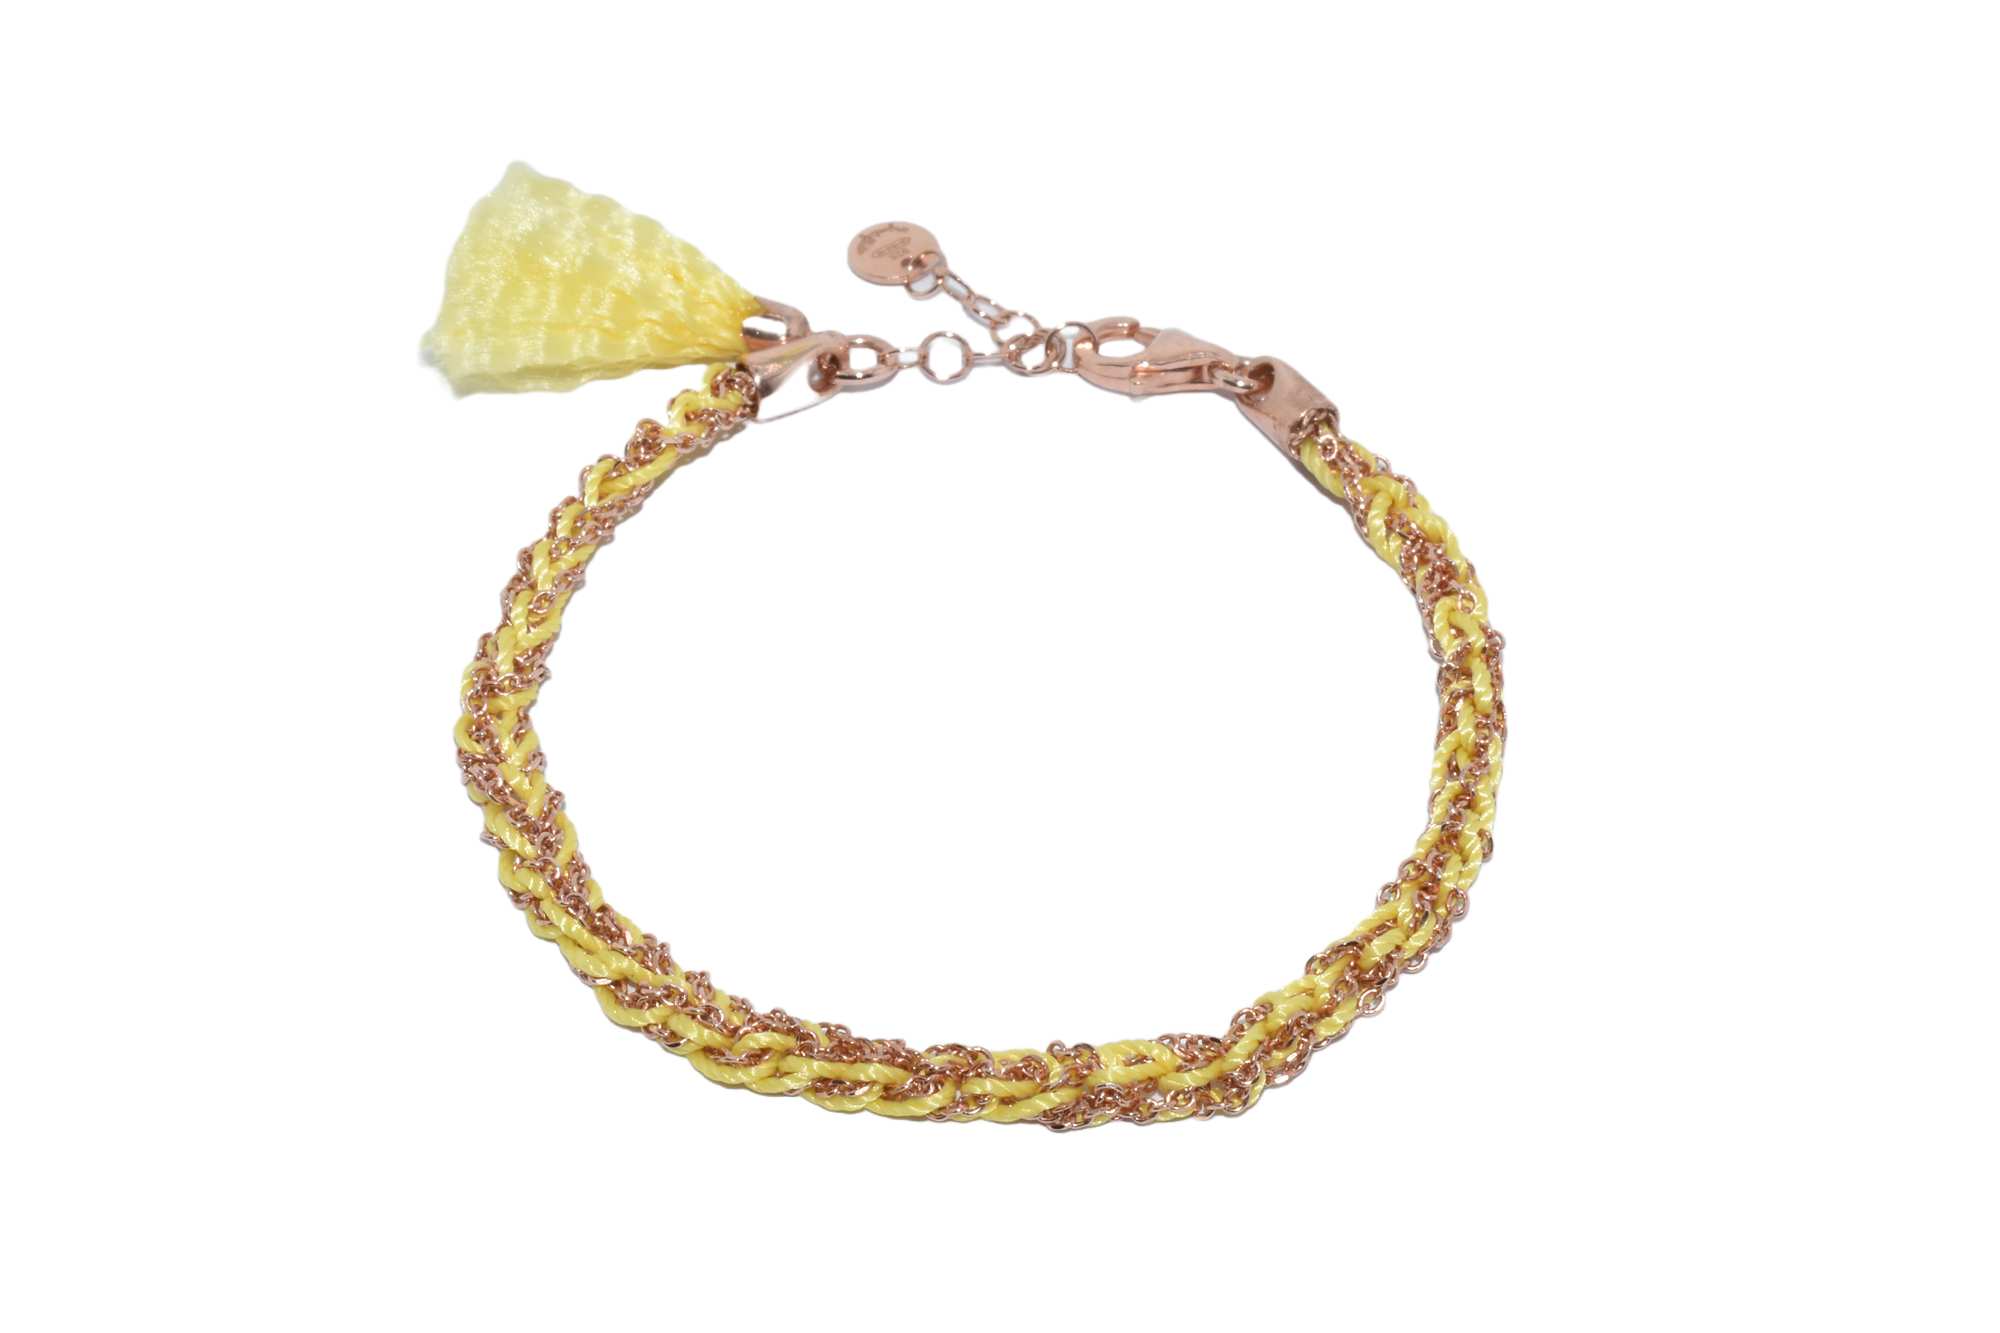 Bracciale-uncinetto-con-cotone-giallo-Argentofilato-in-argento-925-oro-rosa